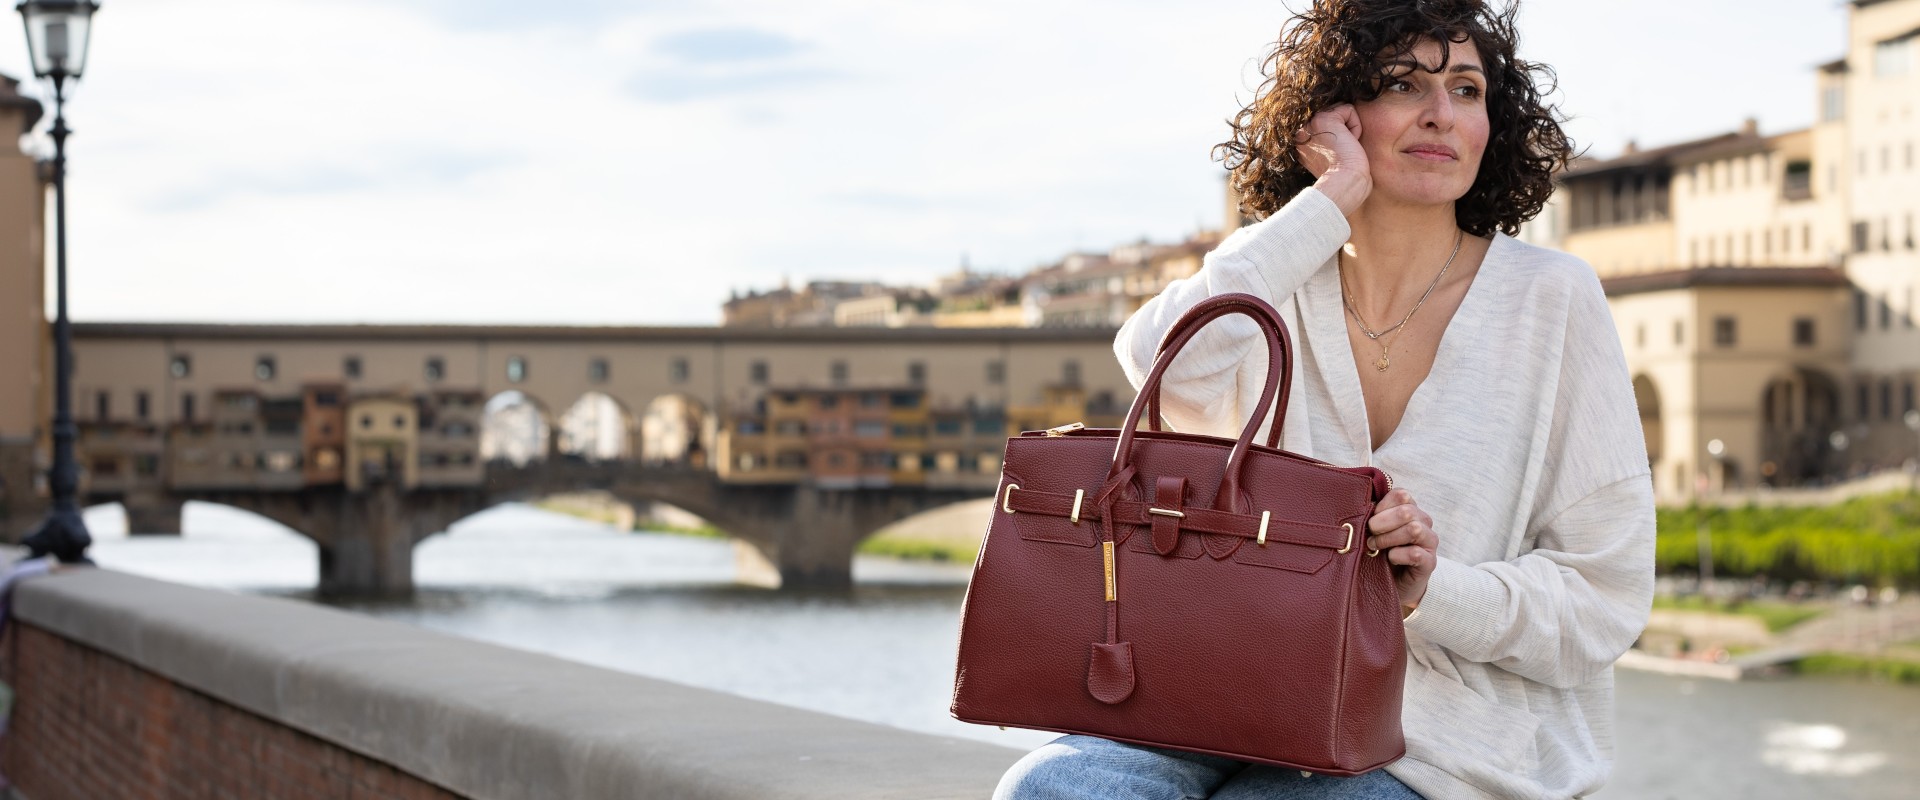 イタリア製本革バッグのオンラインショップ | AmicaMakoフィレンツェ